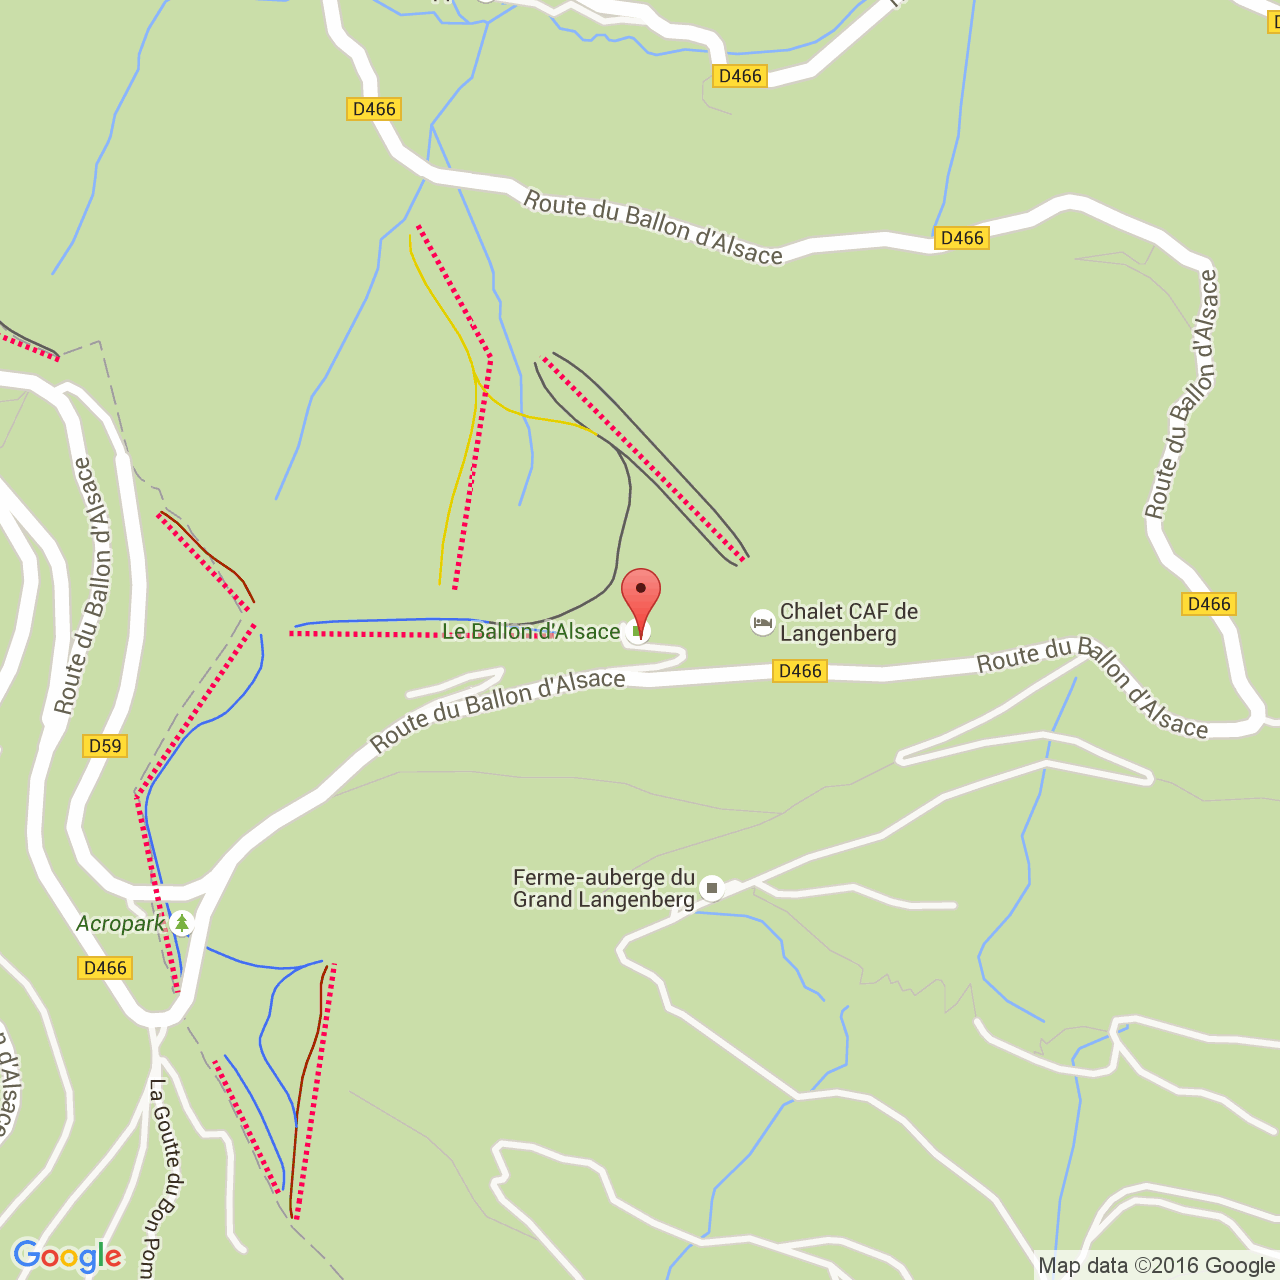 orkest Vestiging Wanneer Ferme auberge du Langenberg dans les Vosges: ski, raquettes, randonnée,  VTT, Acropark dans la Vallée de Masevaux en Alsace